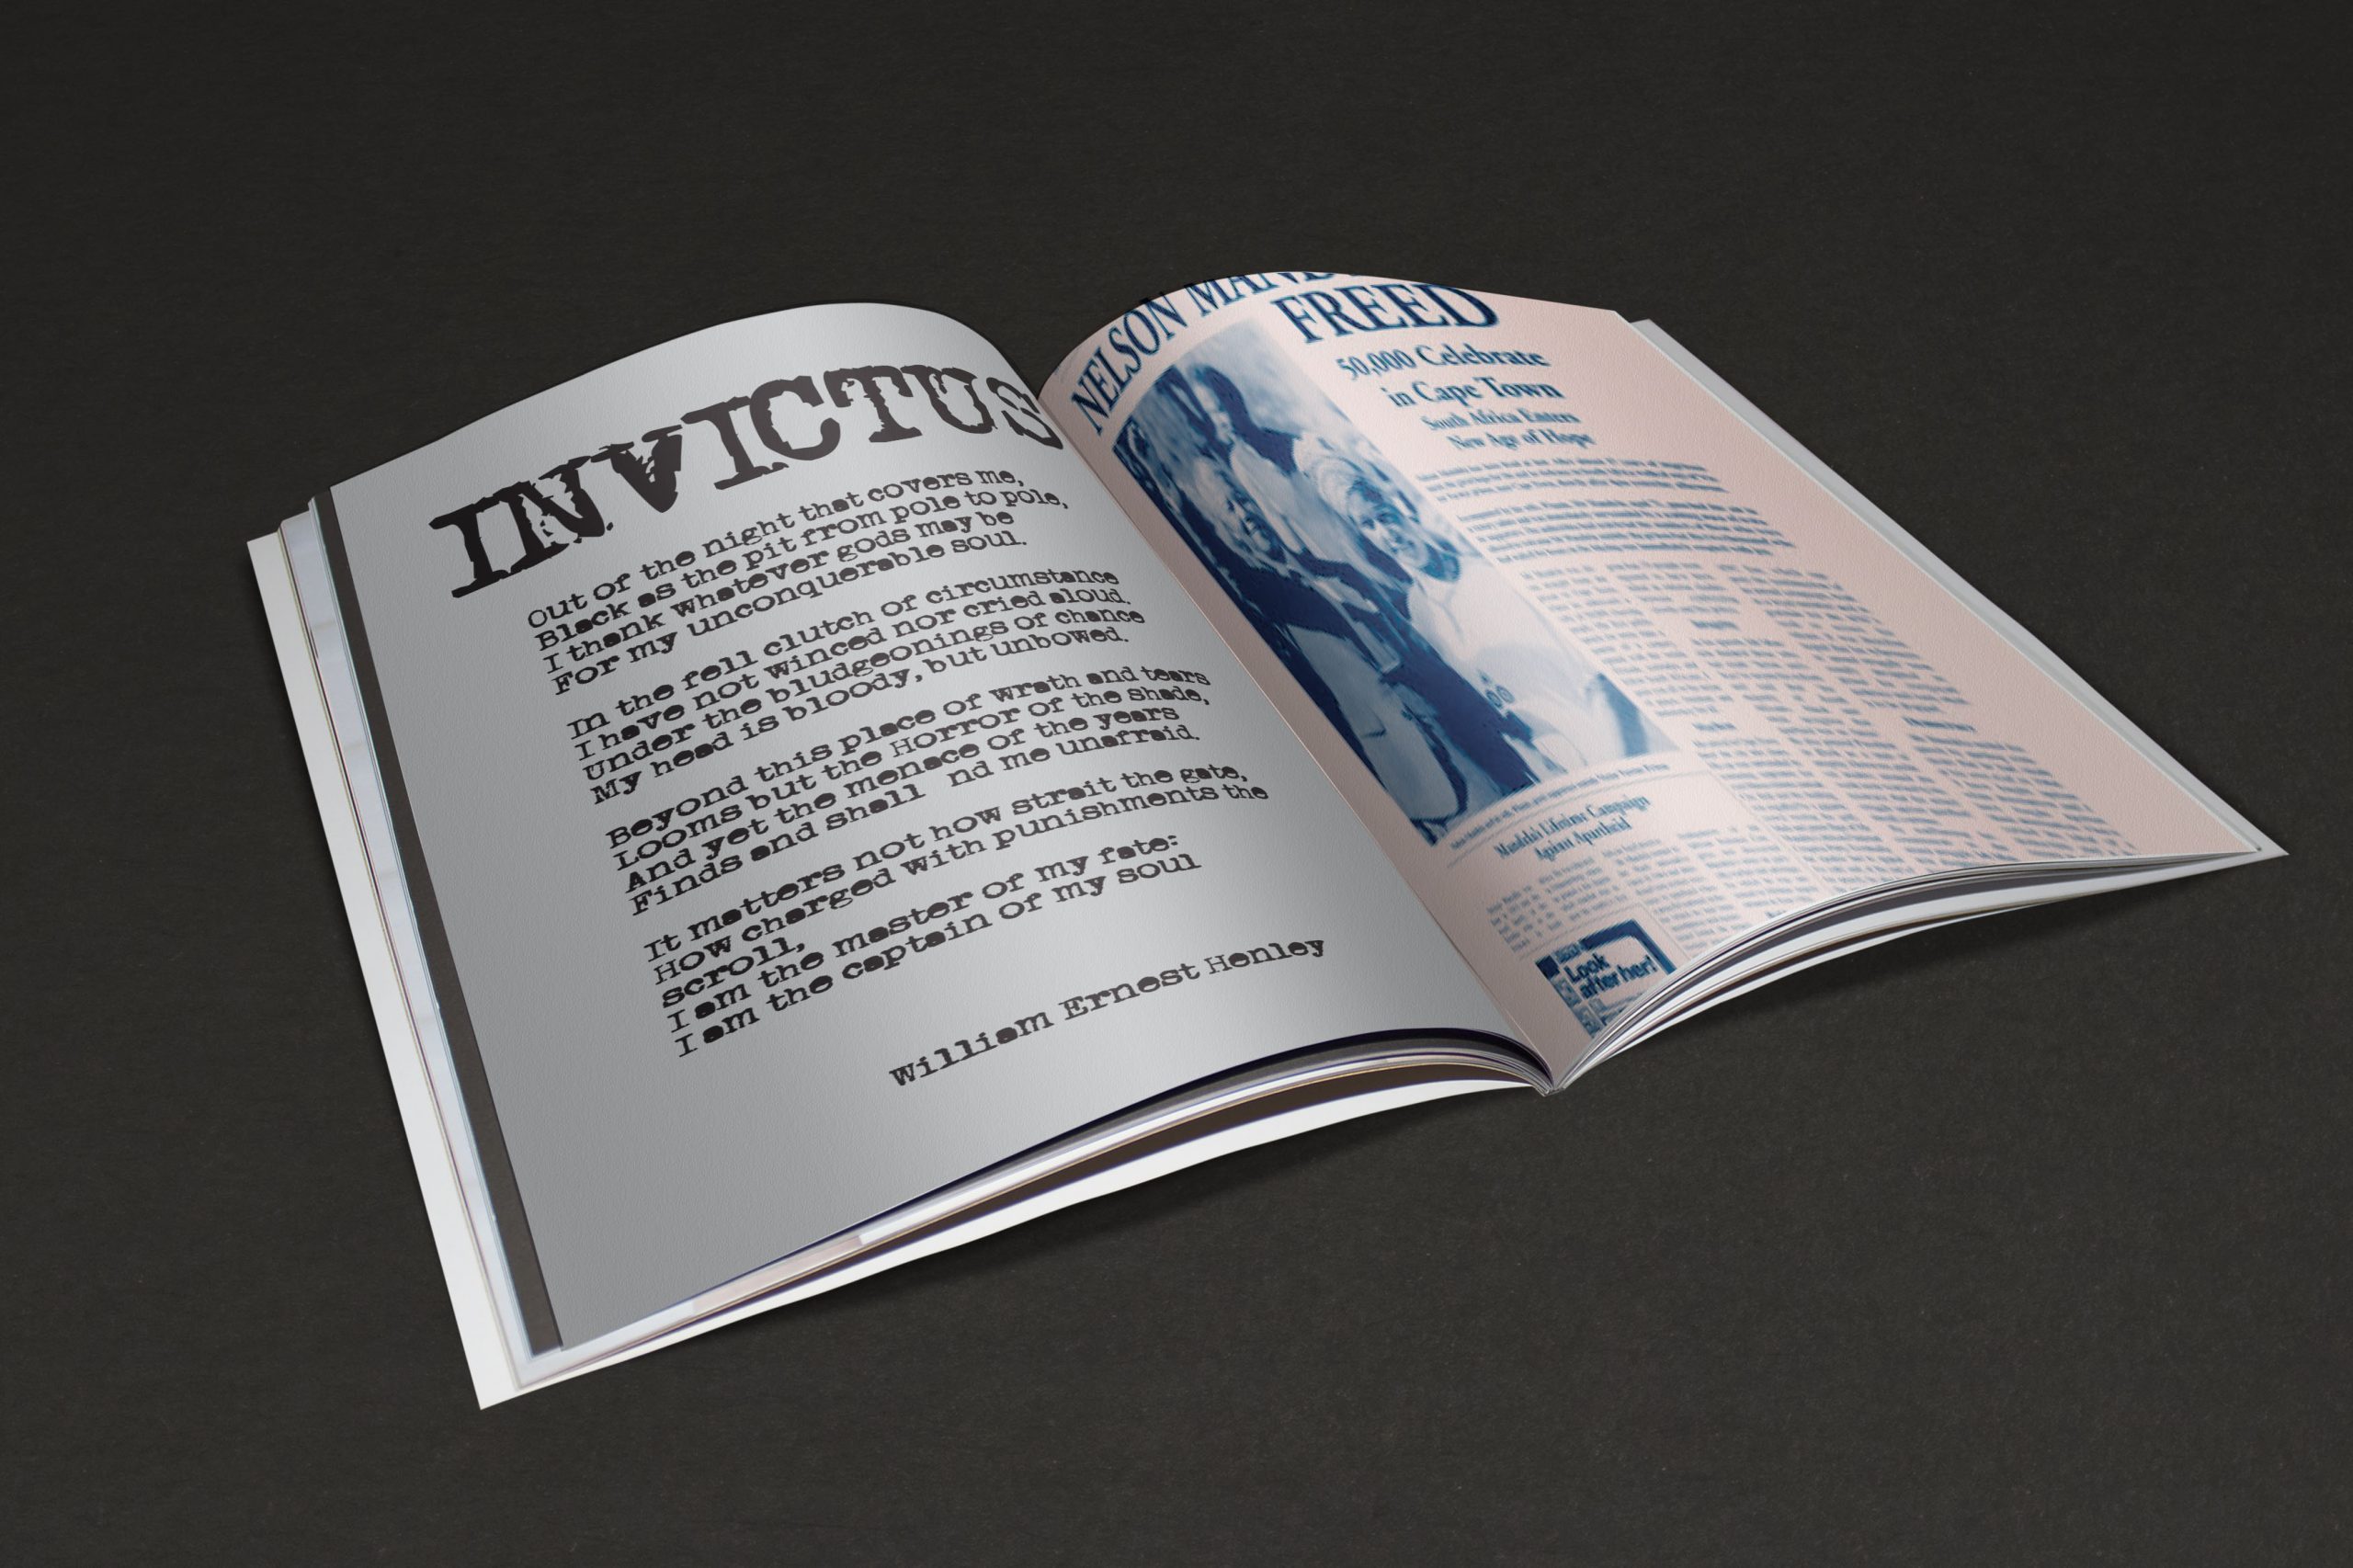 PROJET ESAT/ LEVIS FREEDOM
Extrait du projet Levi’s: «Levi’s réinvente le bleu»
Soirée événementielle au Palais de Tokyo : Levi’s s’approprie le bleu contemporain.
Réalisation d’un livre de design sur le bleu.